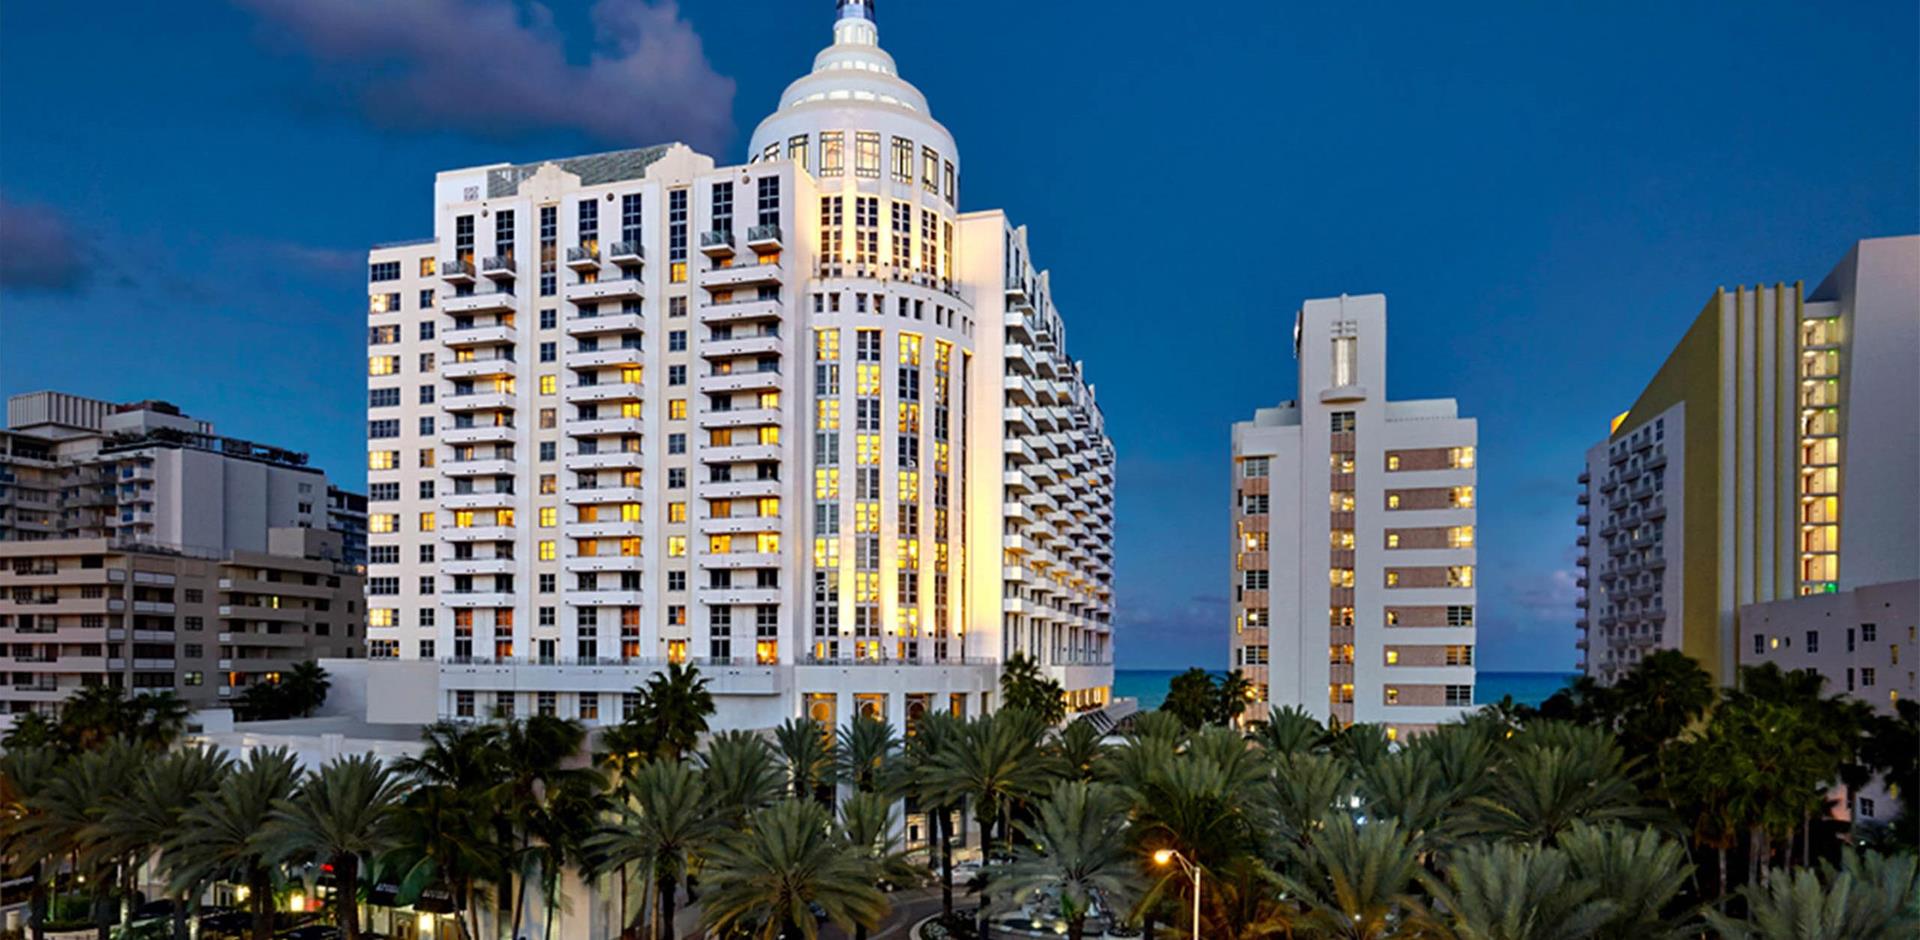 Loews Miami Beach Hotel, Miami, Florida, USA